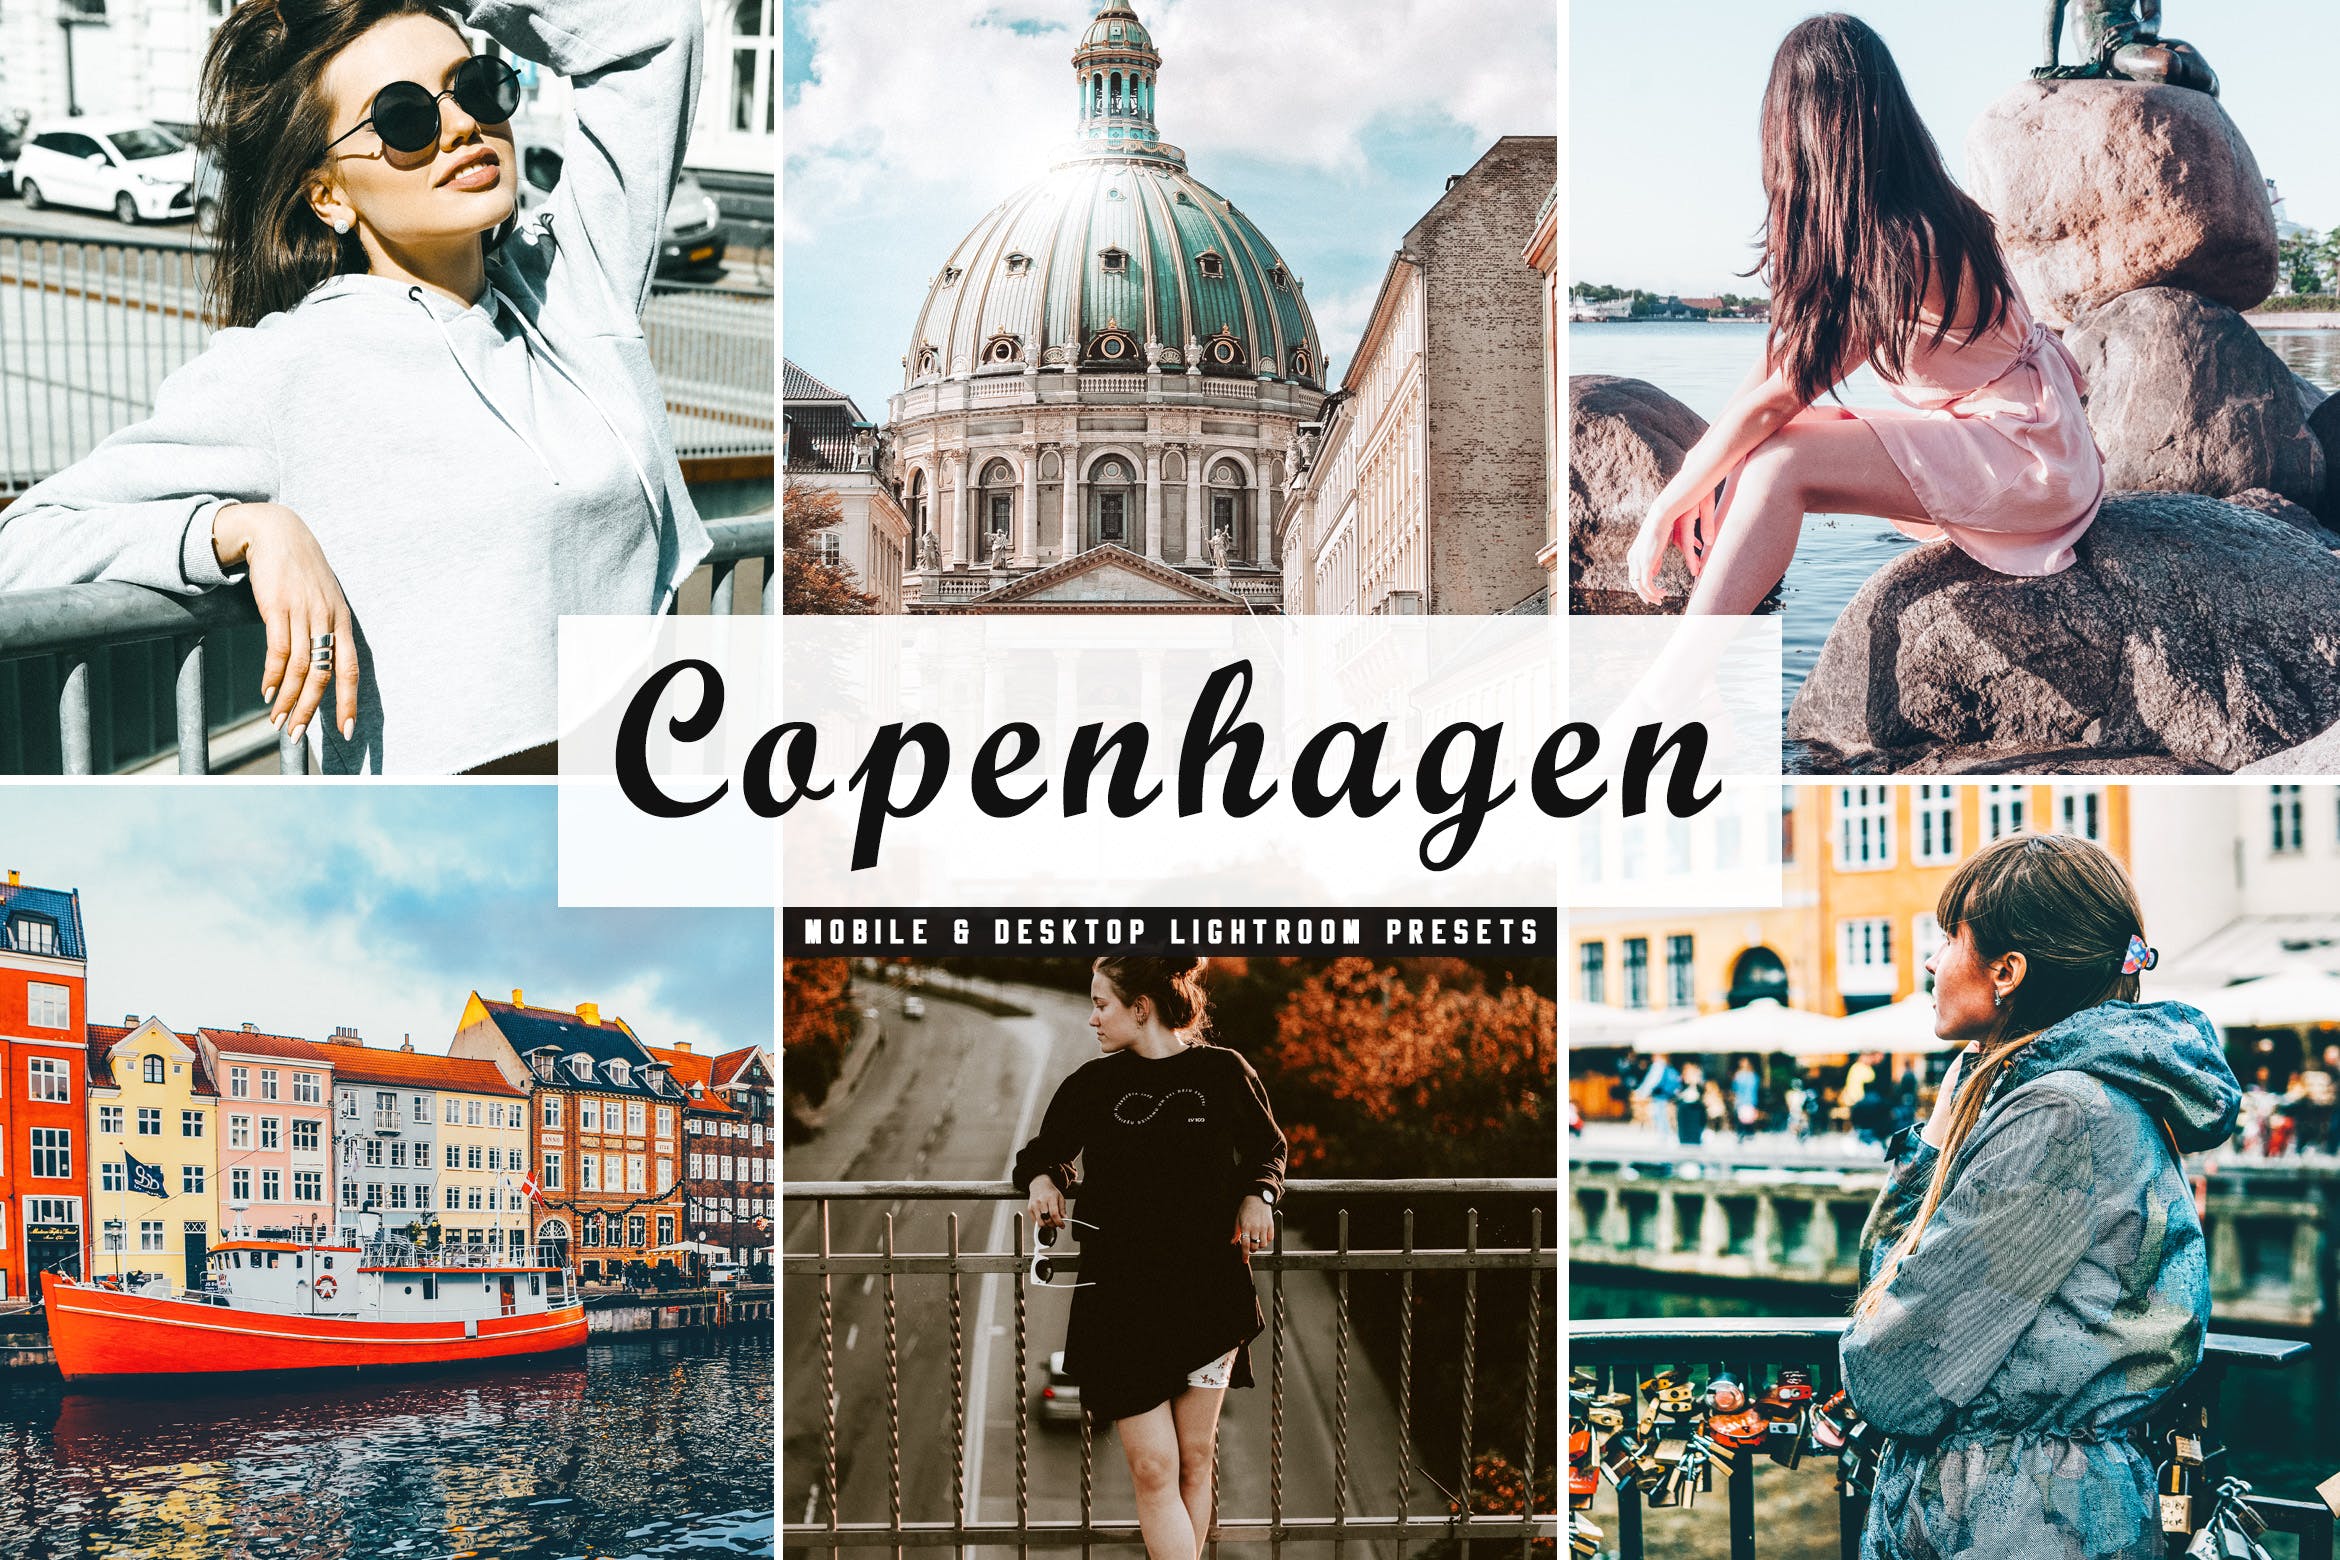 人物风景摄影亮色暖色调处理亿图网易图库精选LR预设下载 Copenhagen Mobile & Desktop Lightroom Presets插图